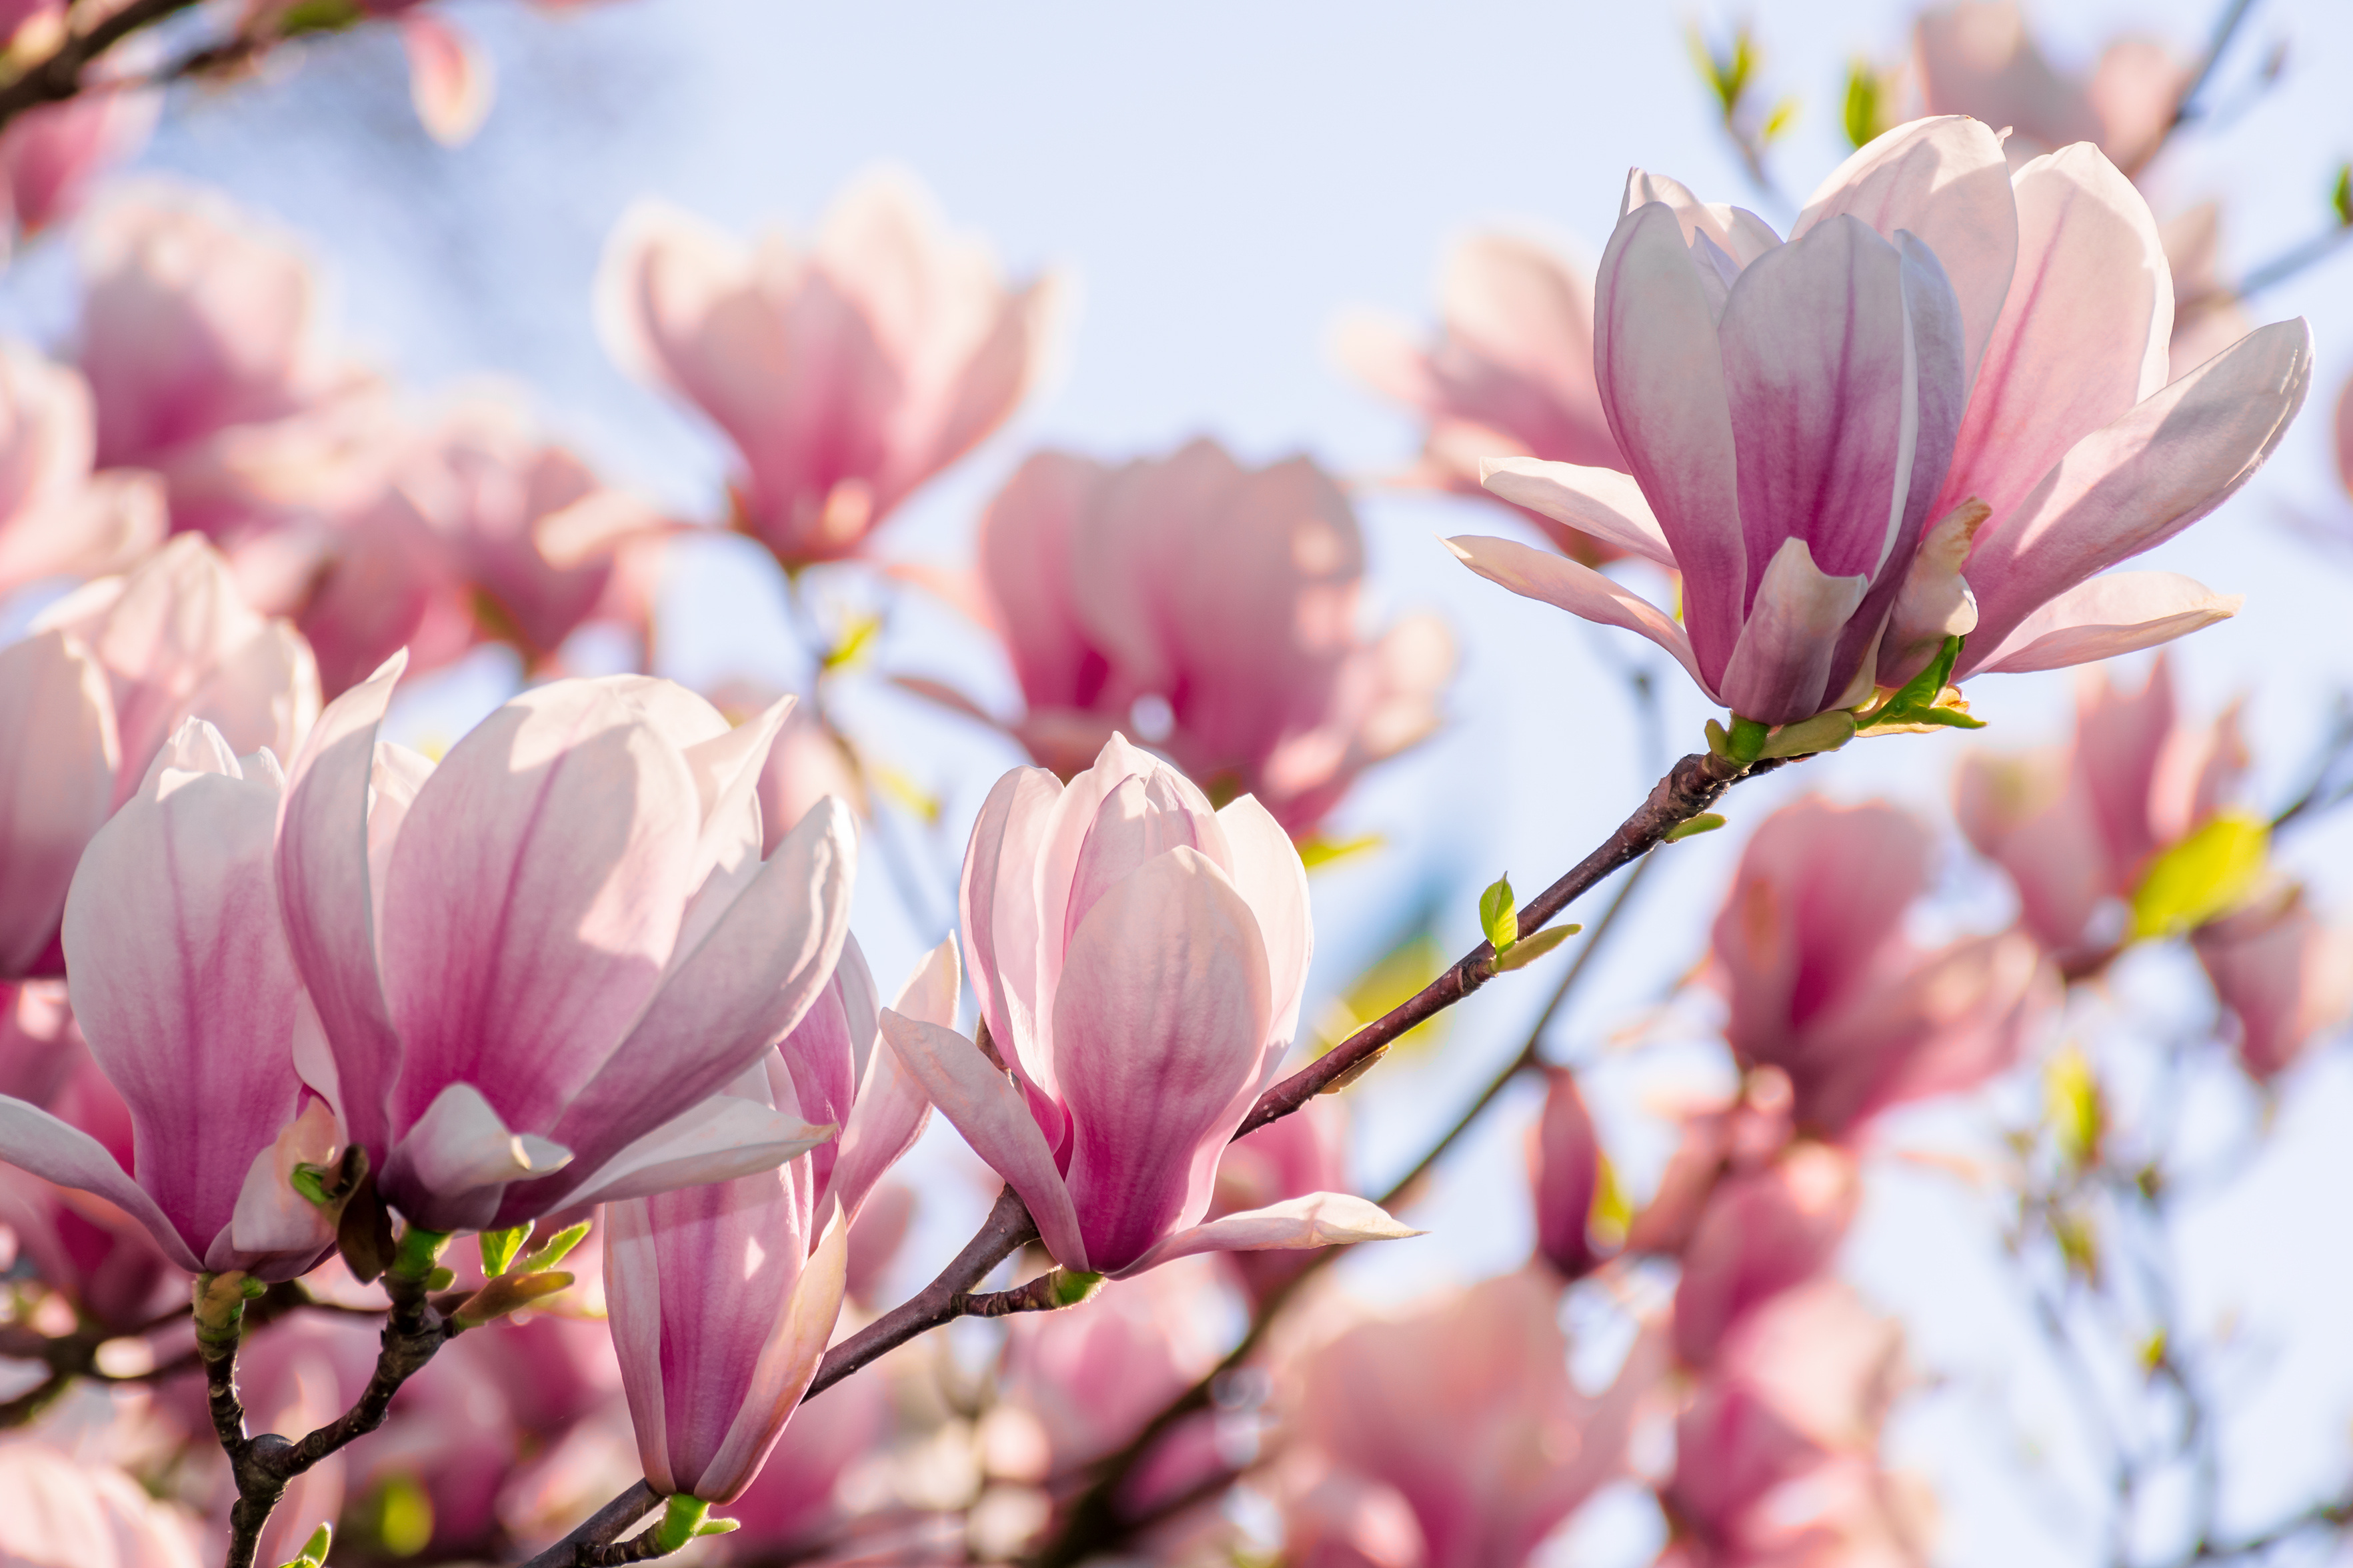 Cand se planteaza magnolia din ghiveci in gradina. Sfaturi pentru ingrijirea plantei